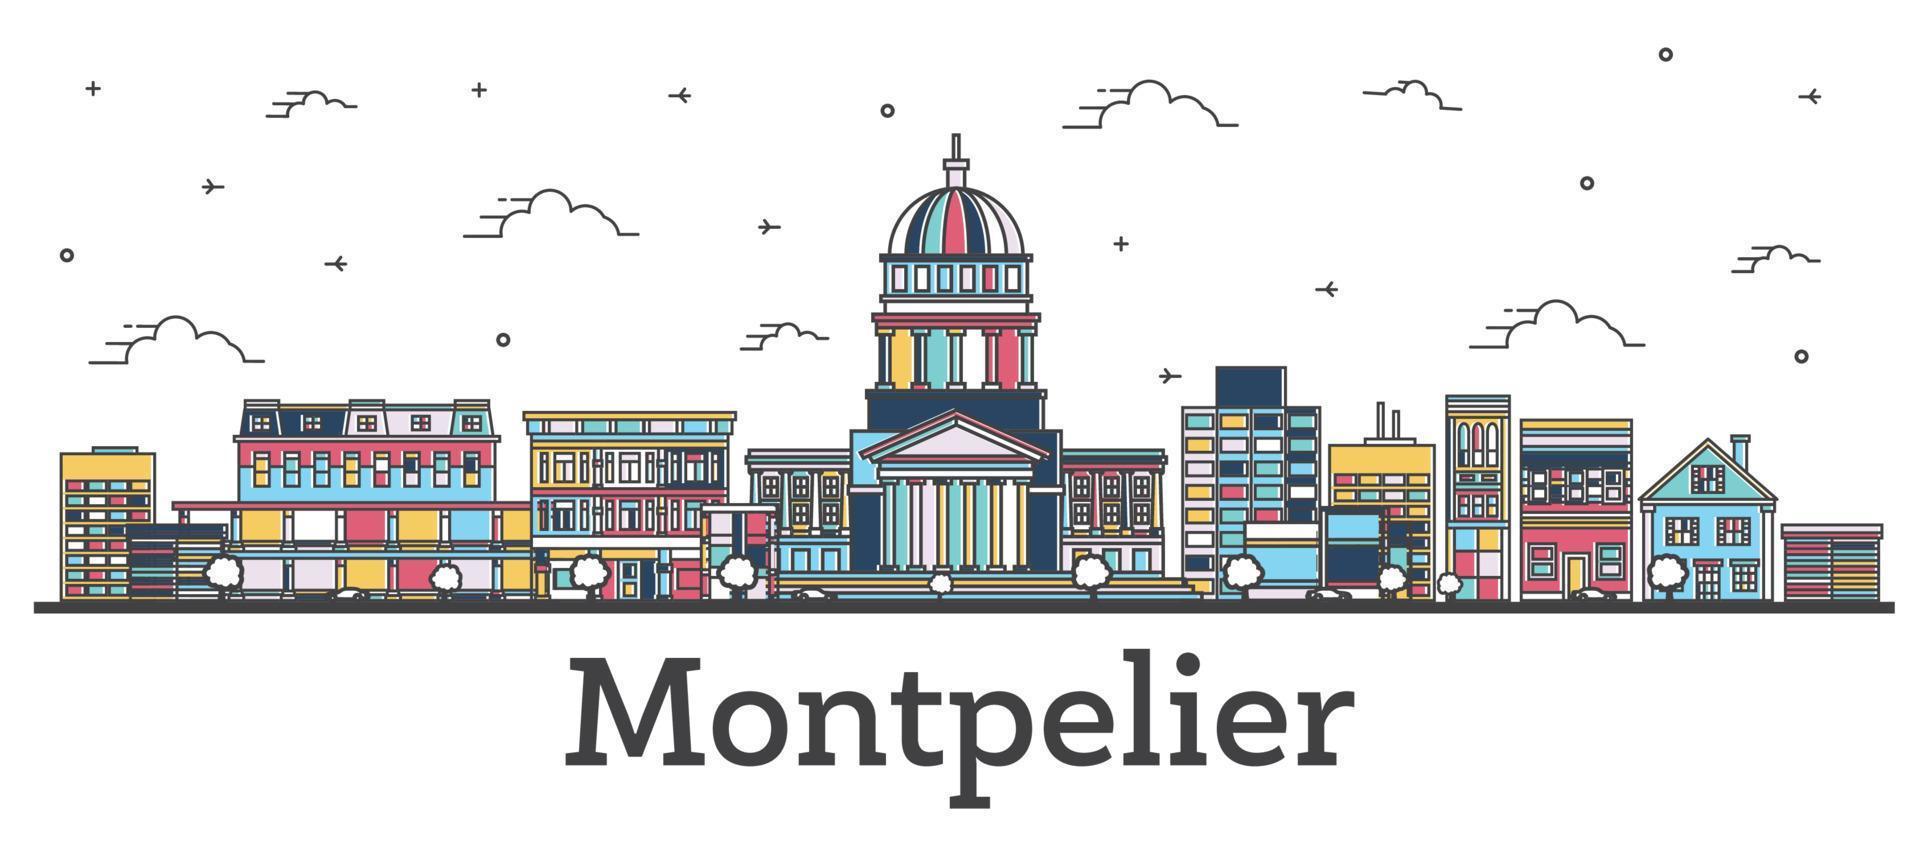 delineie o horizonte da cidade de montpelier vermont com edifícios coloridos isolados em branco. vetor